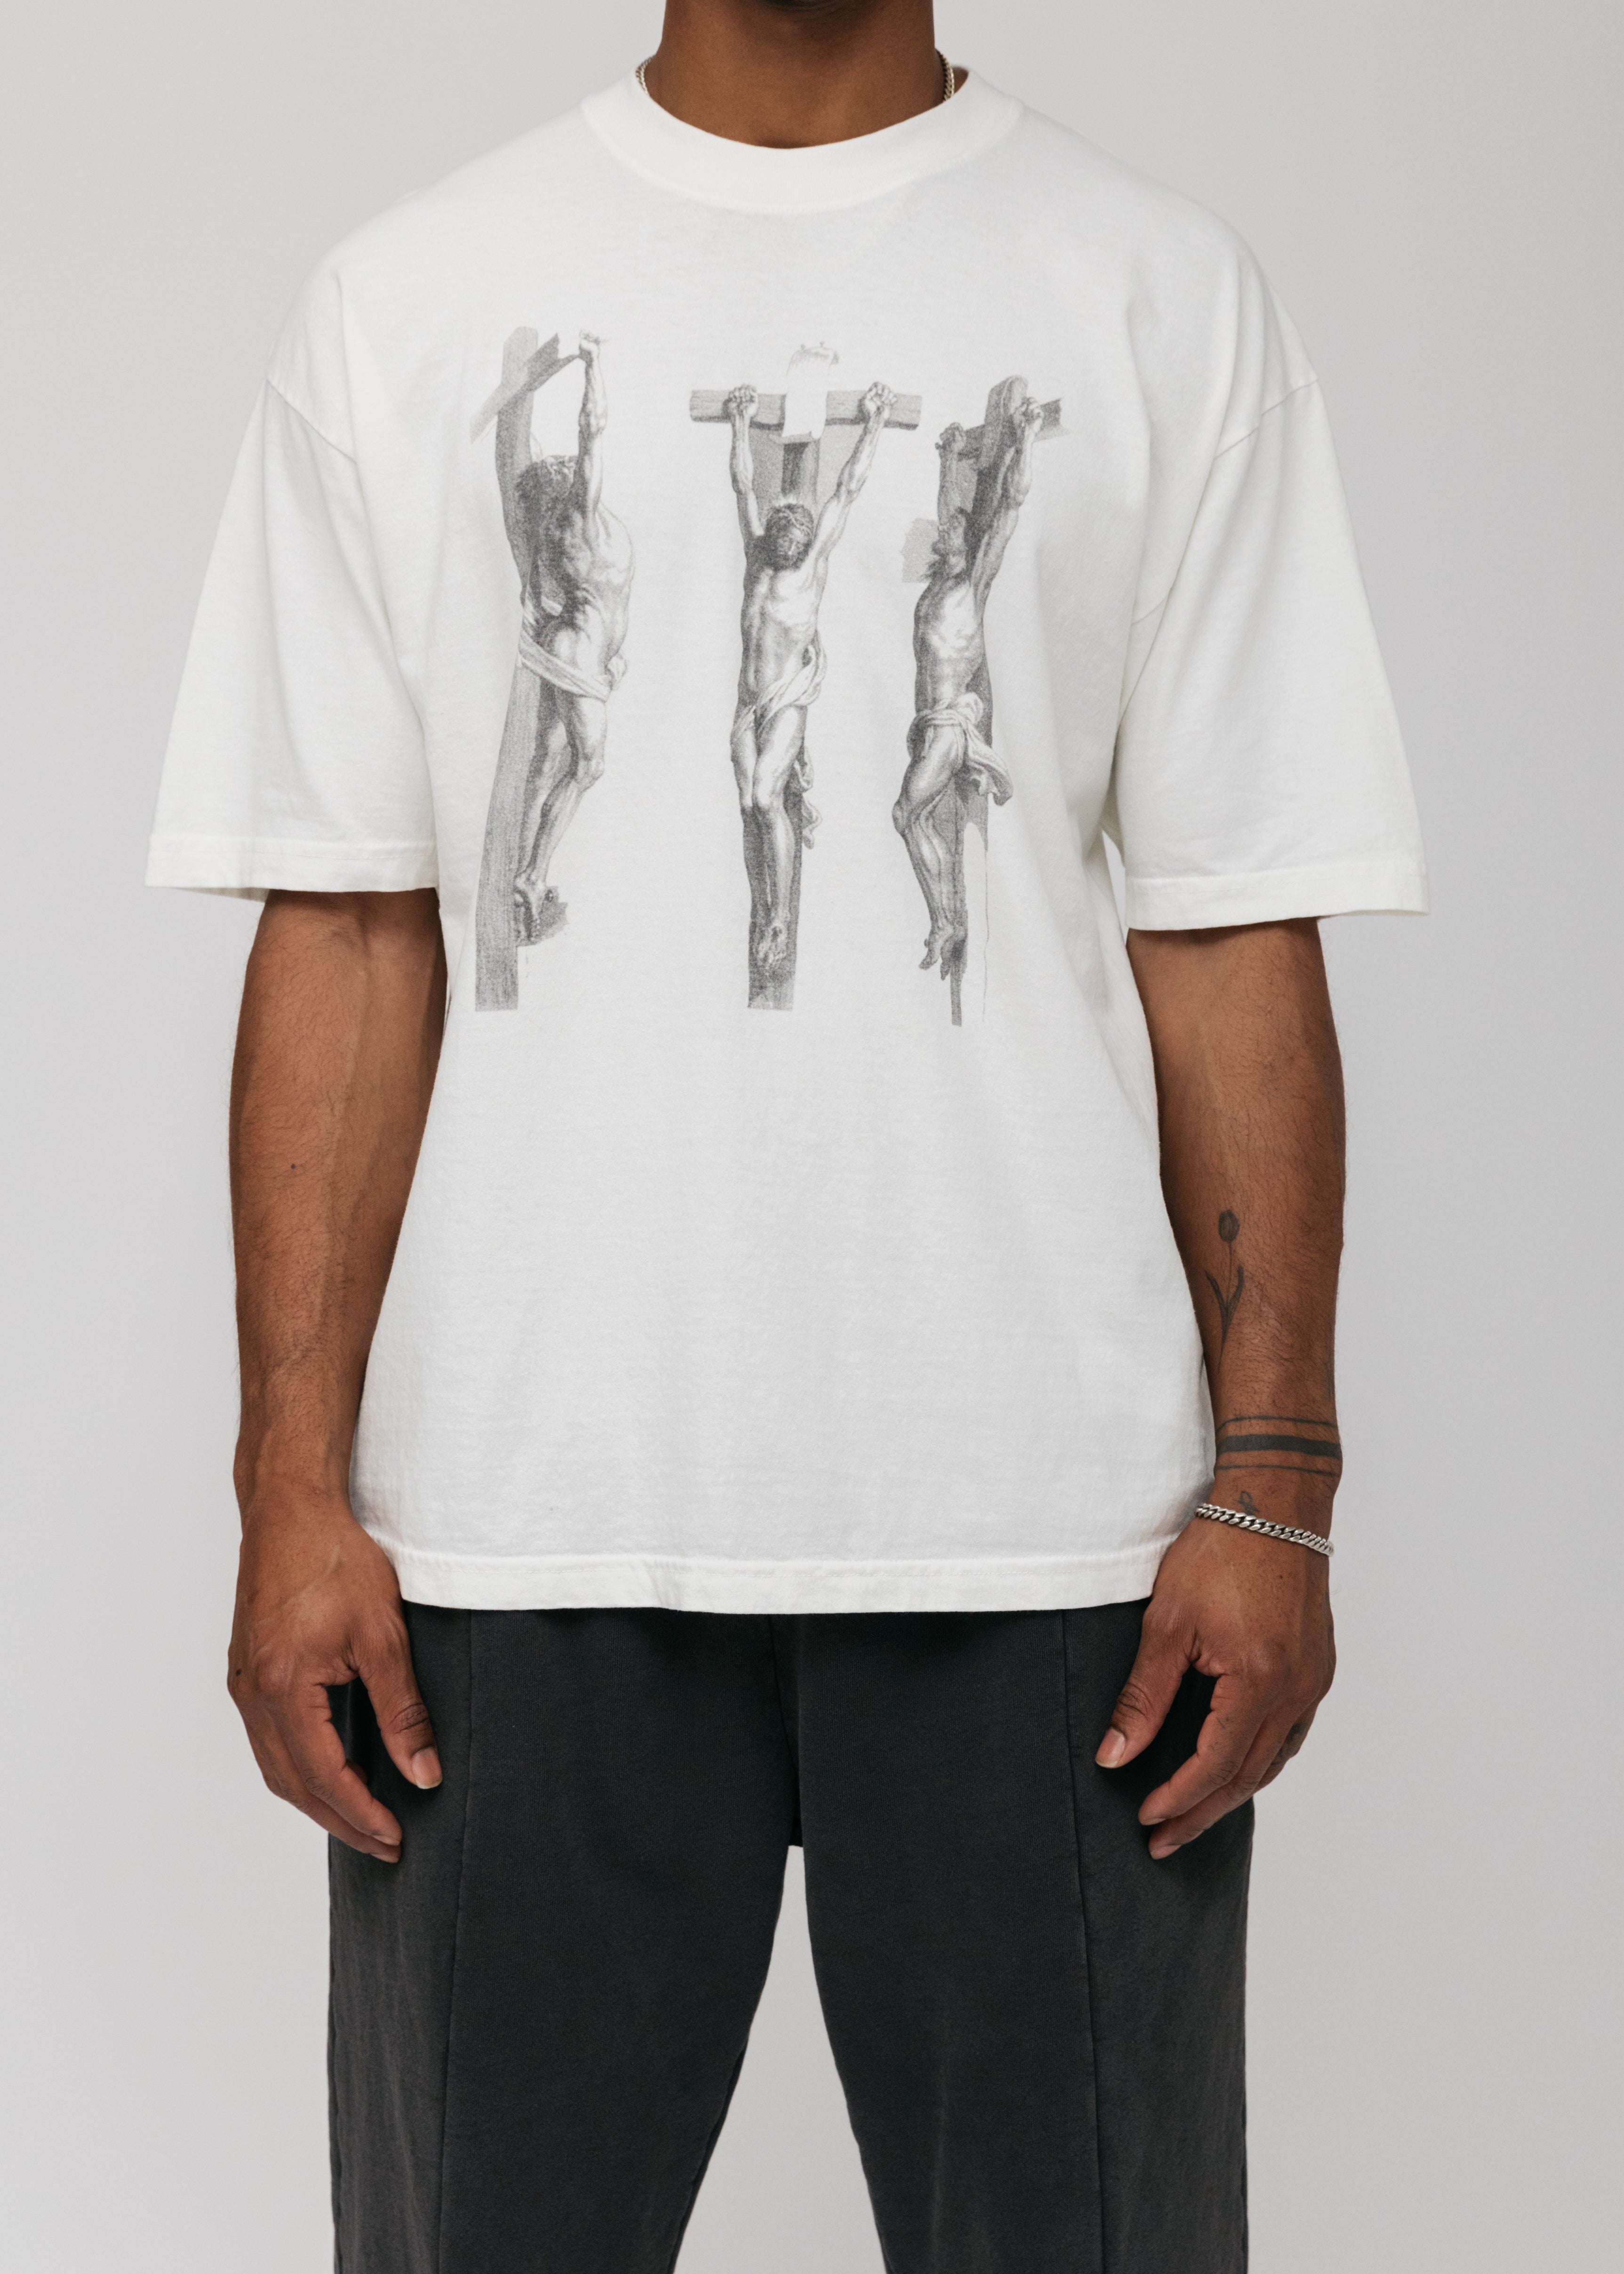 Jesus T-Shirt - Bone